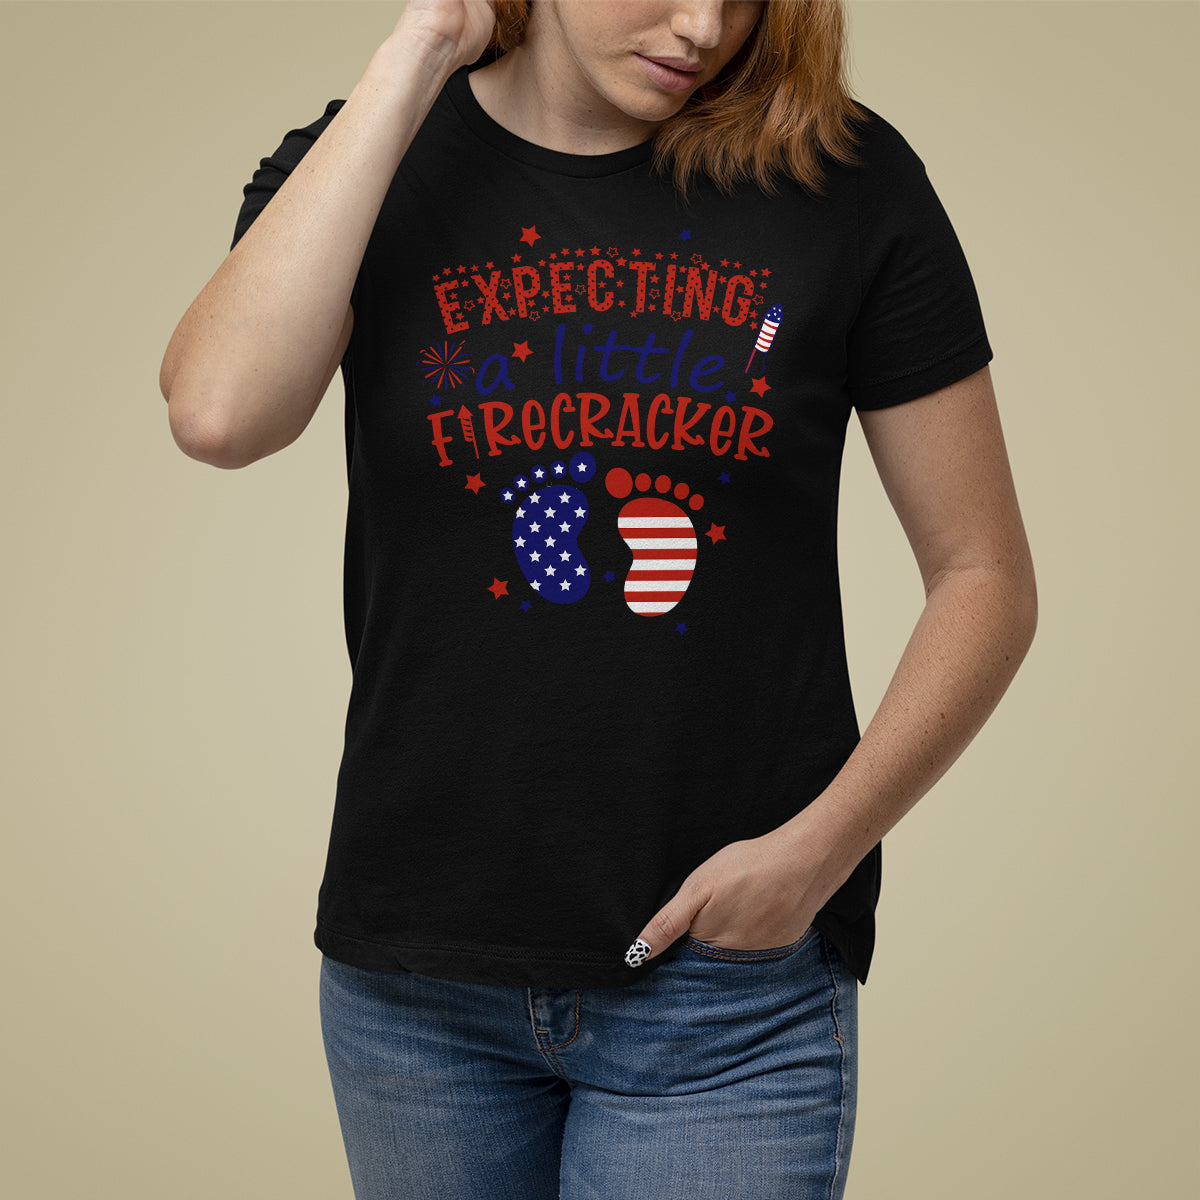 pregnancy-announcement-t-shirt-for-women-expecting-a-little-firecracker